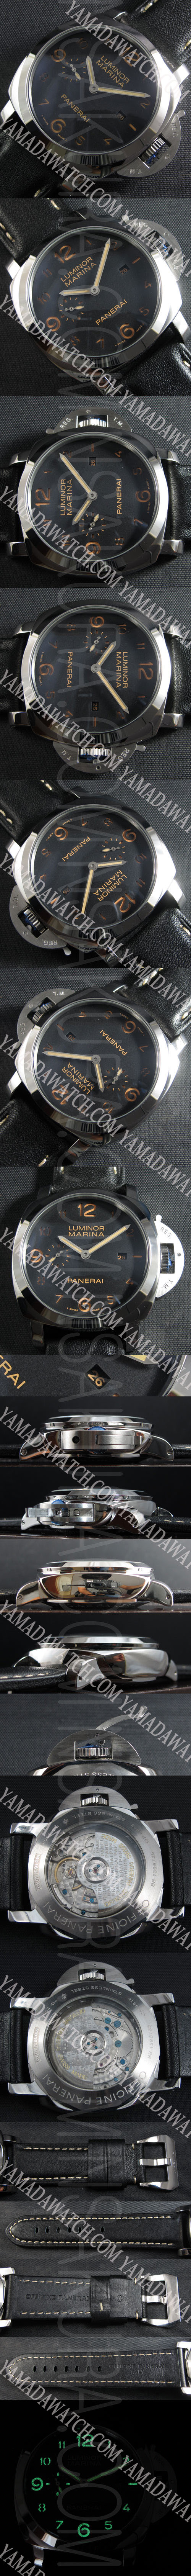 【安心の2年保証】パネライ ルミノール マリーナ PAM00359コピー時計